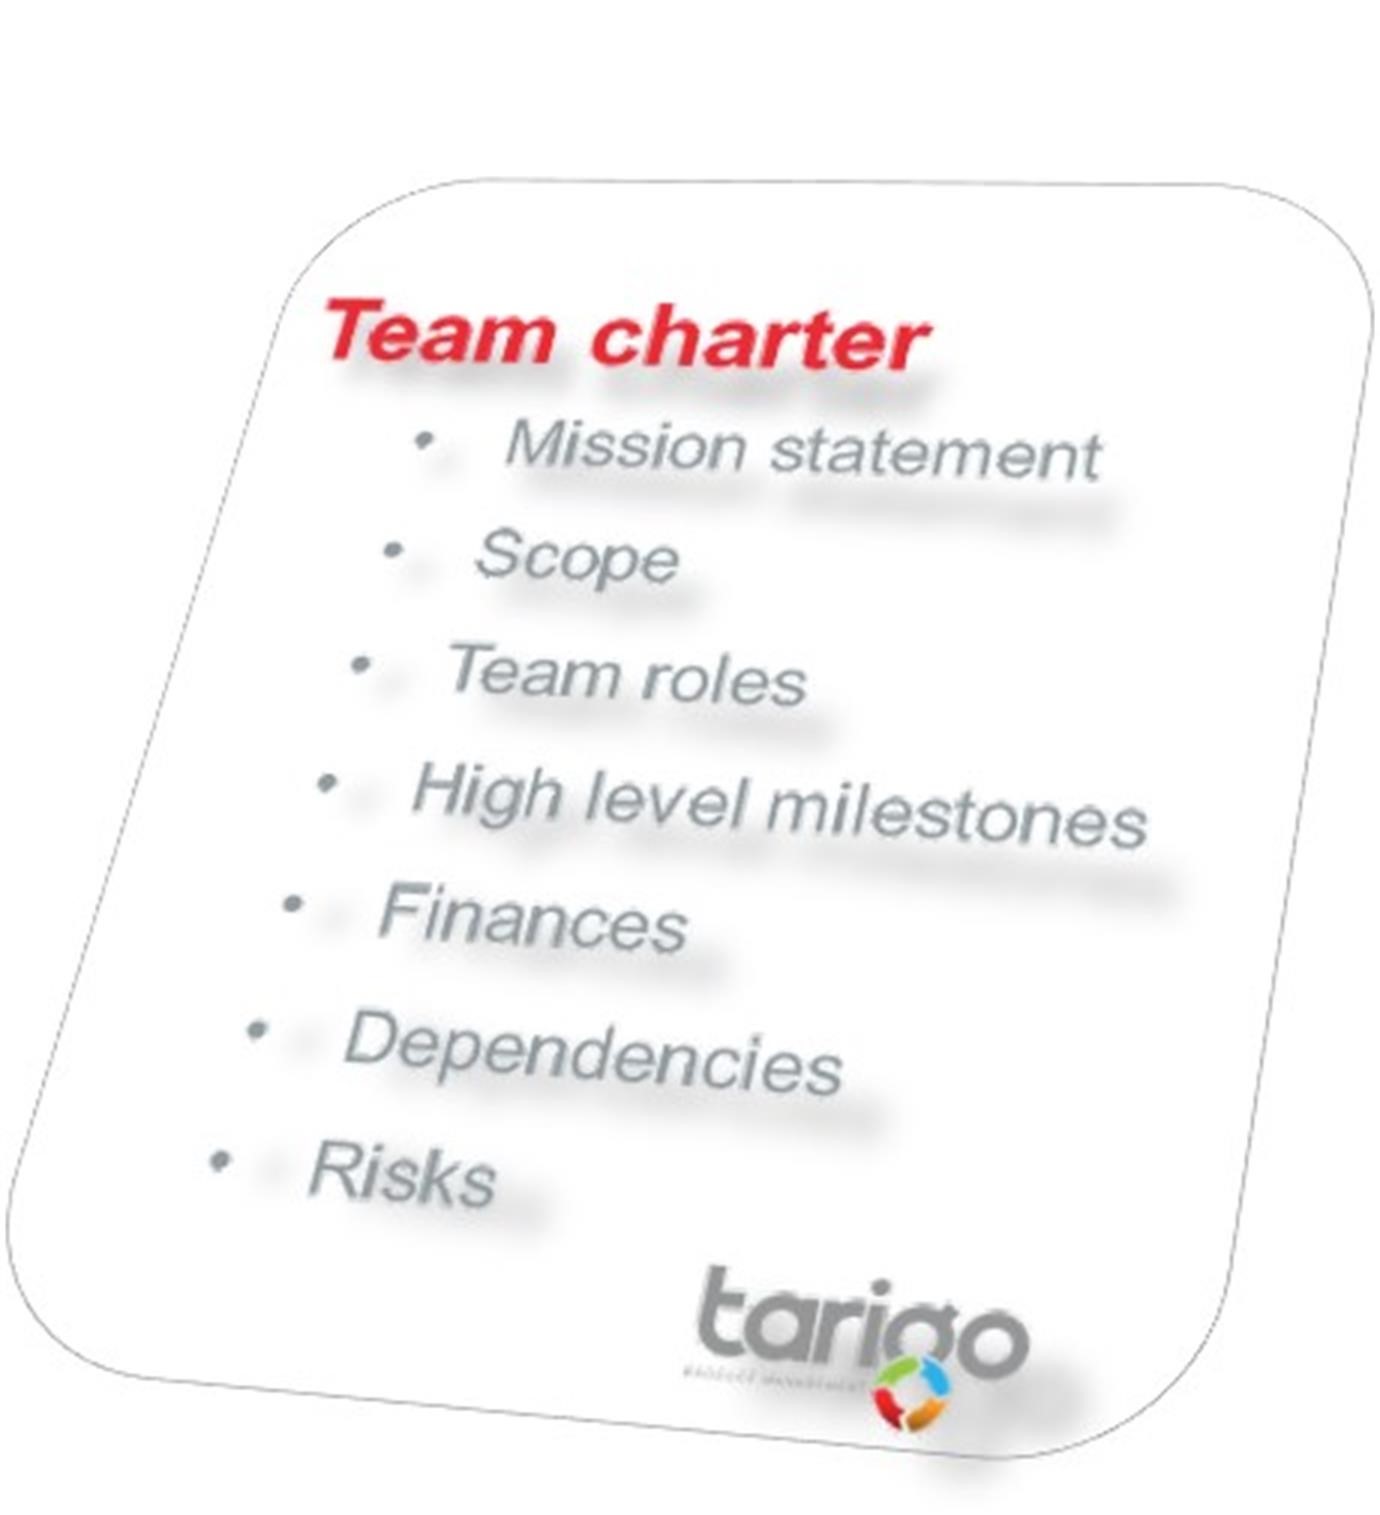 Team Charter